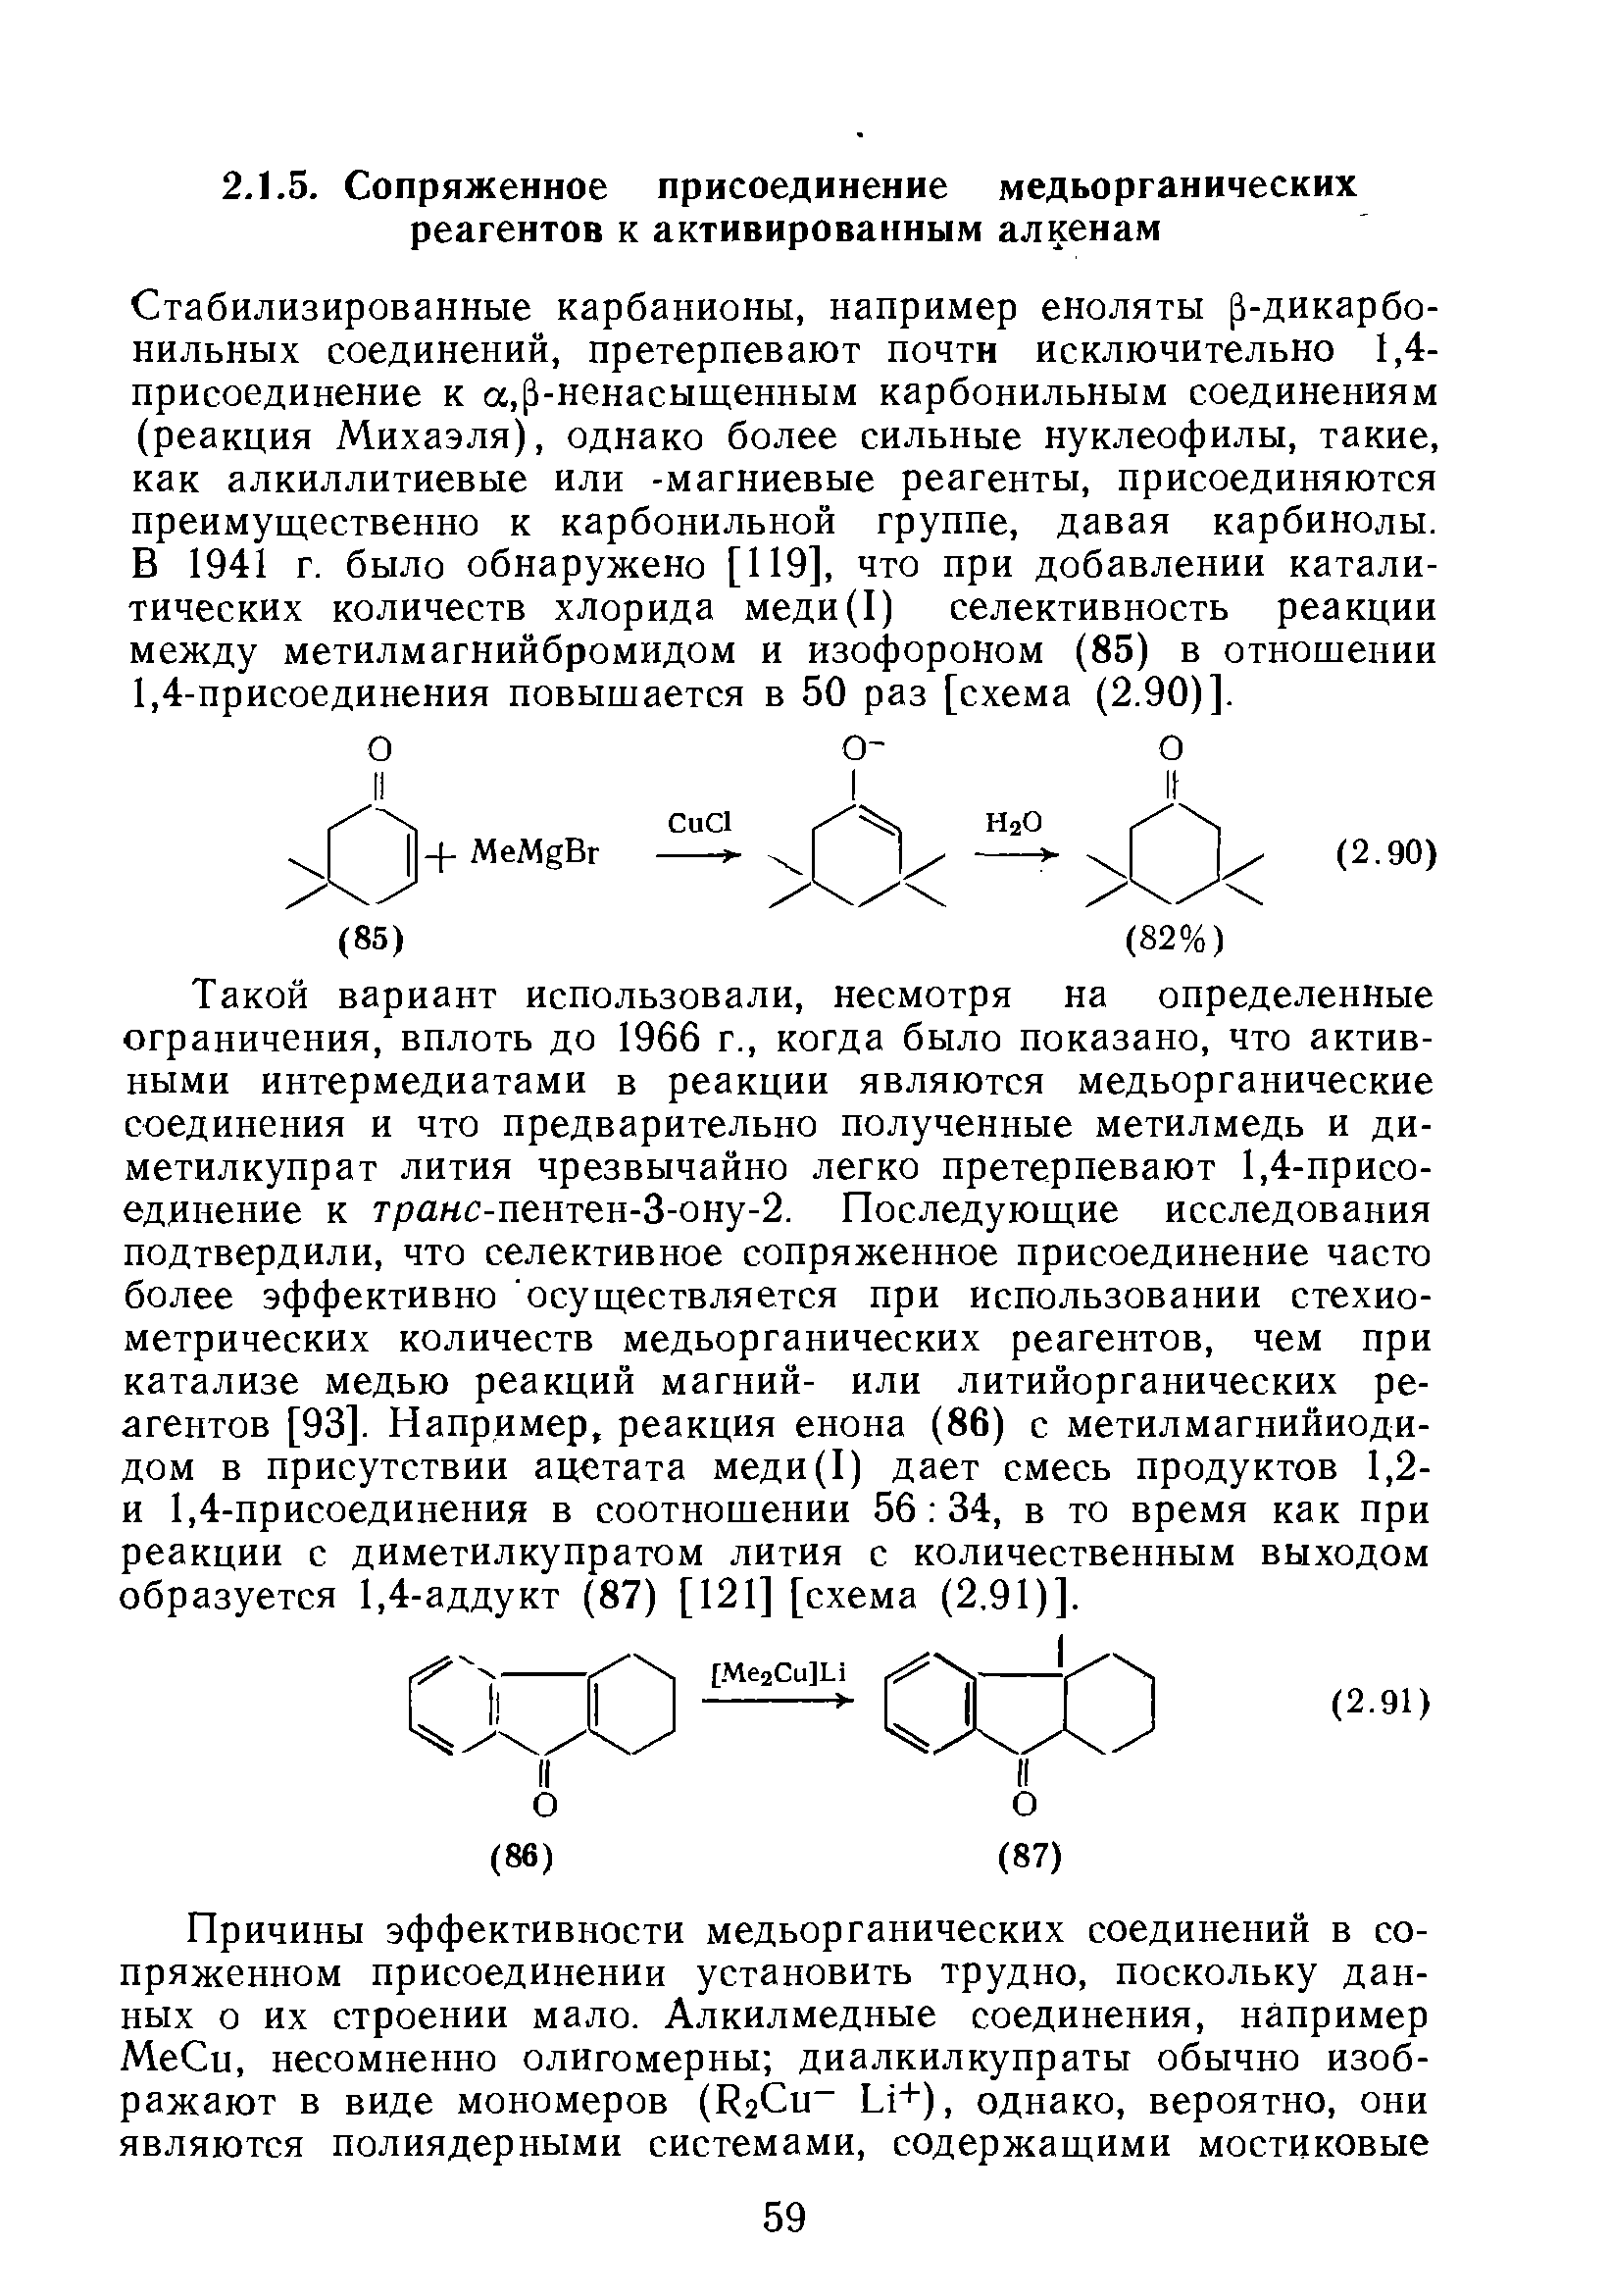 Стабилизированные карбанионы, например еноляты р-дикарбо-нильных соединений, претерпевают почти исключительно 1,4-присоединение к а,р-ненасыщенным карбонильным соединениям (реакция Михаэля), однако более сильные нуклеофилы, такие, как алкиллитиевые или -магниевые реагенты, присоединяются преимущественно к карбонильной группе, давая карбинолы. В 1941 г. было обнаружено [119], что при добавлении каталитических количеств хлорида меди(1) селективность реакции между метилмагнийбромидом и изофороном (85) в отношении 1,4-присоединения повышается в 50 раз [схема (2.90)].